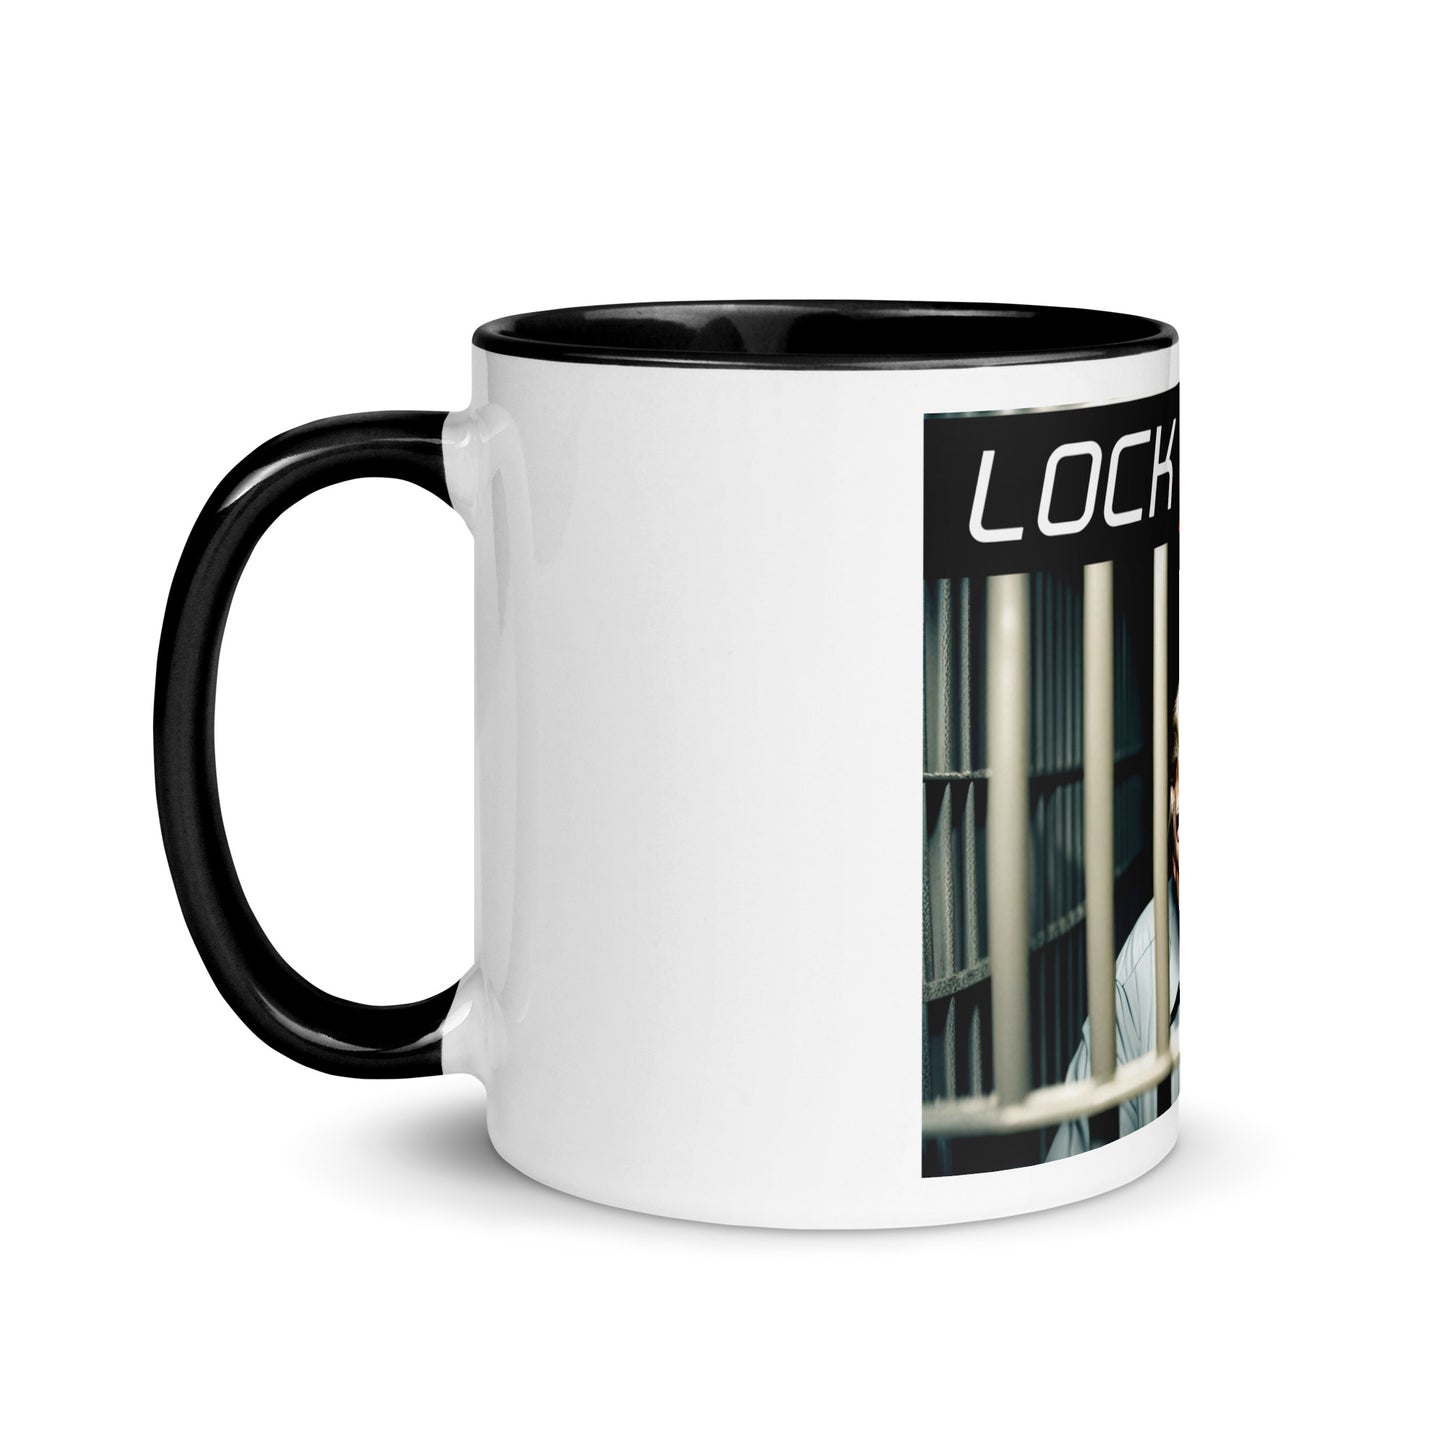 "Lock him up" design #1 mug